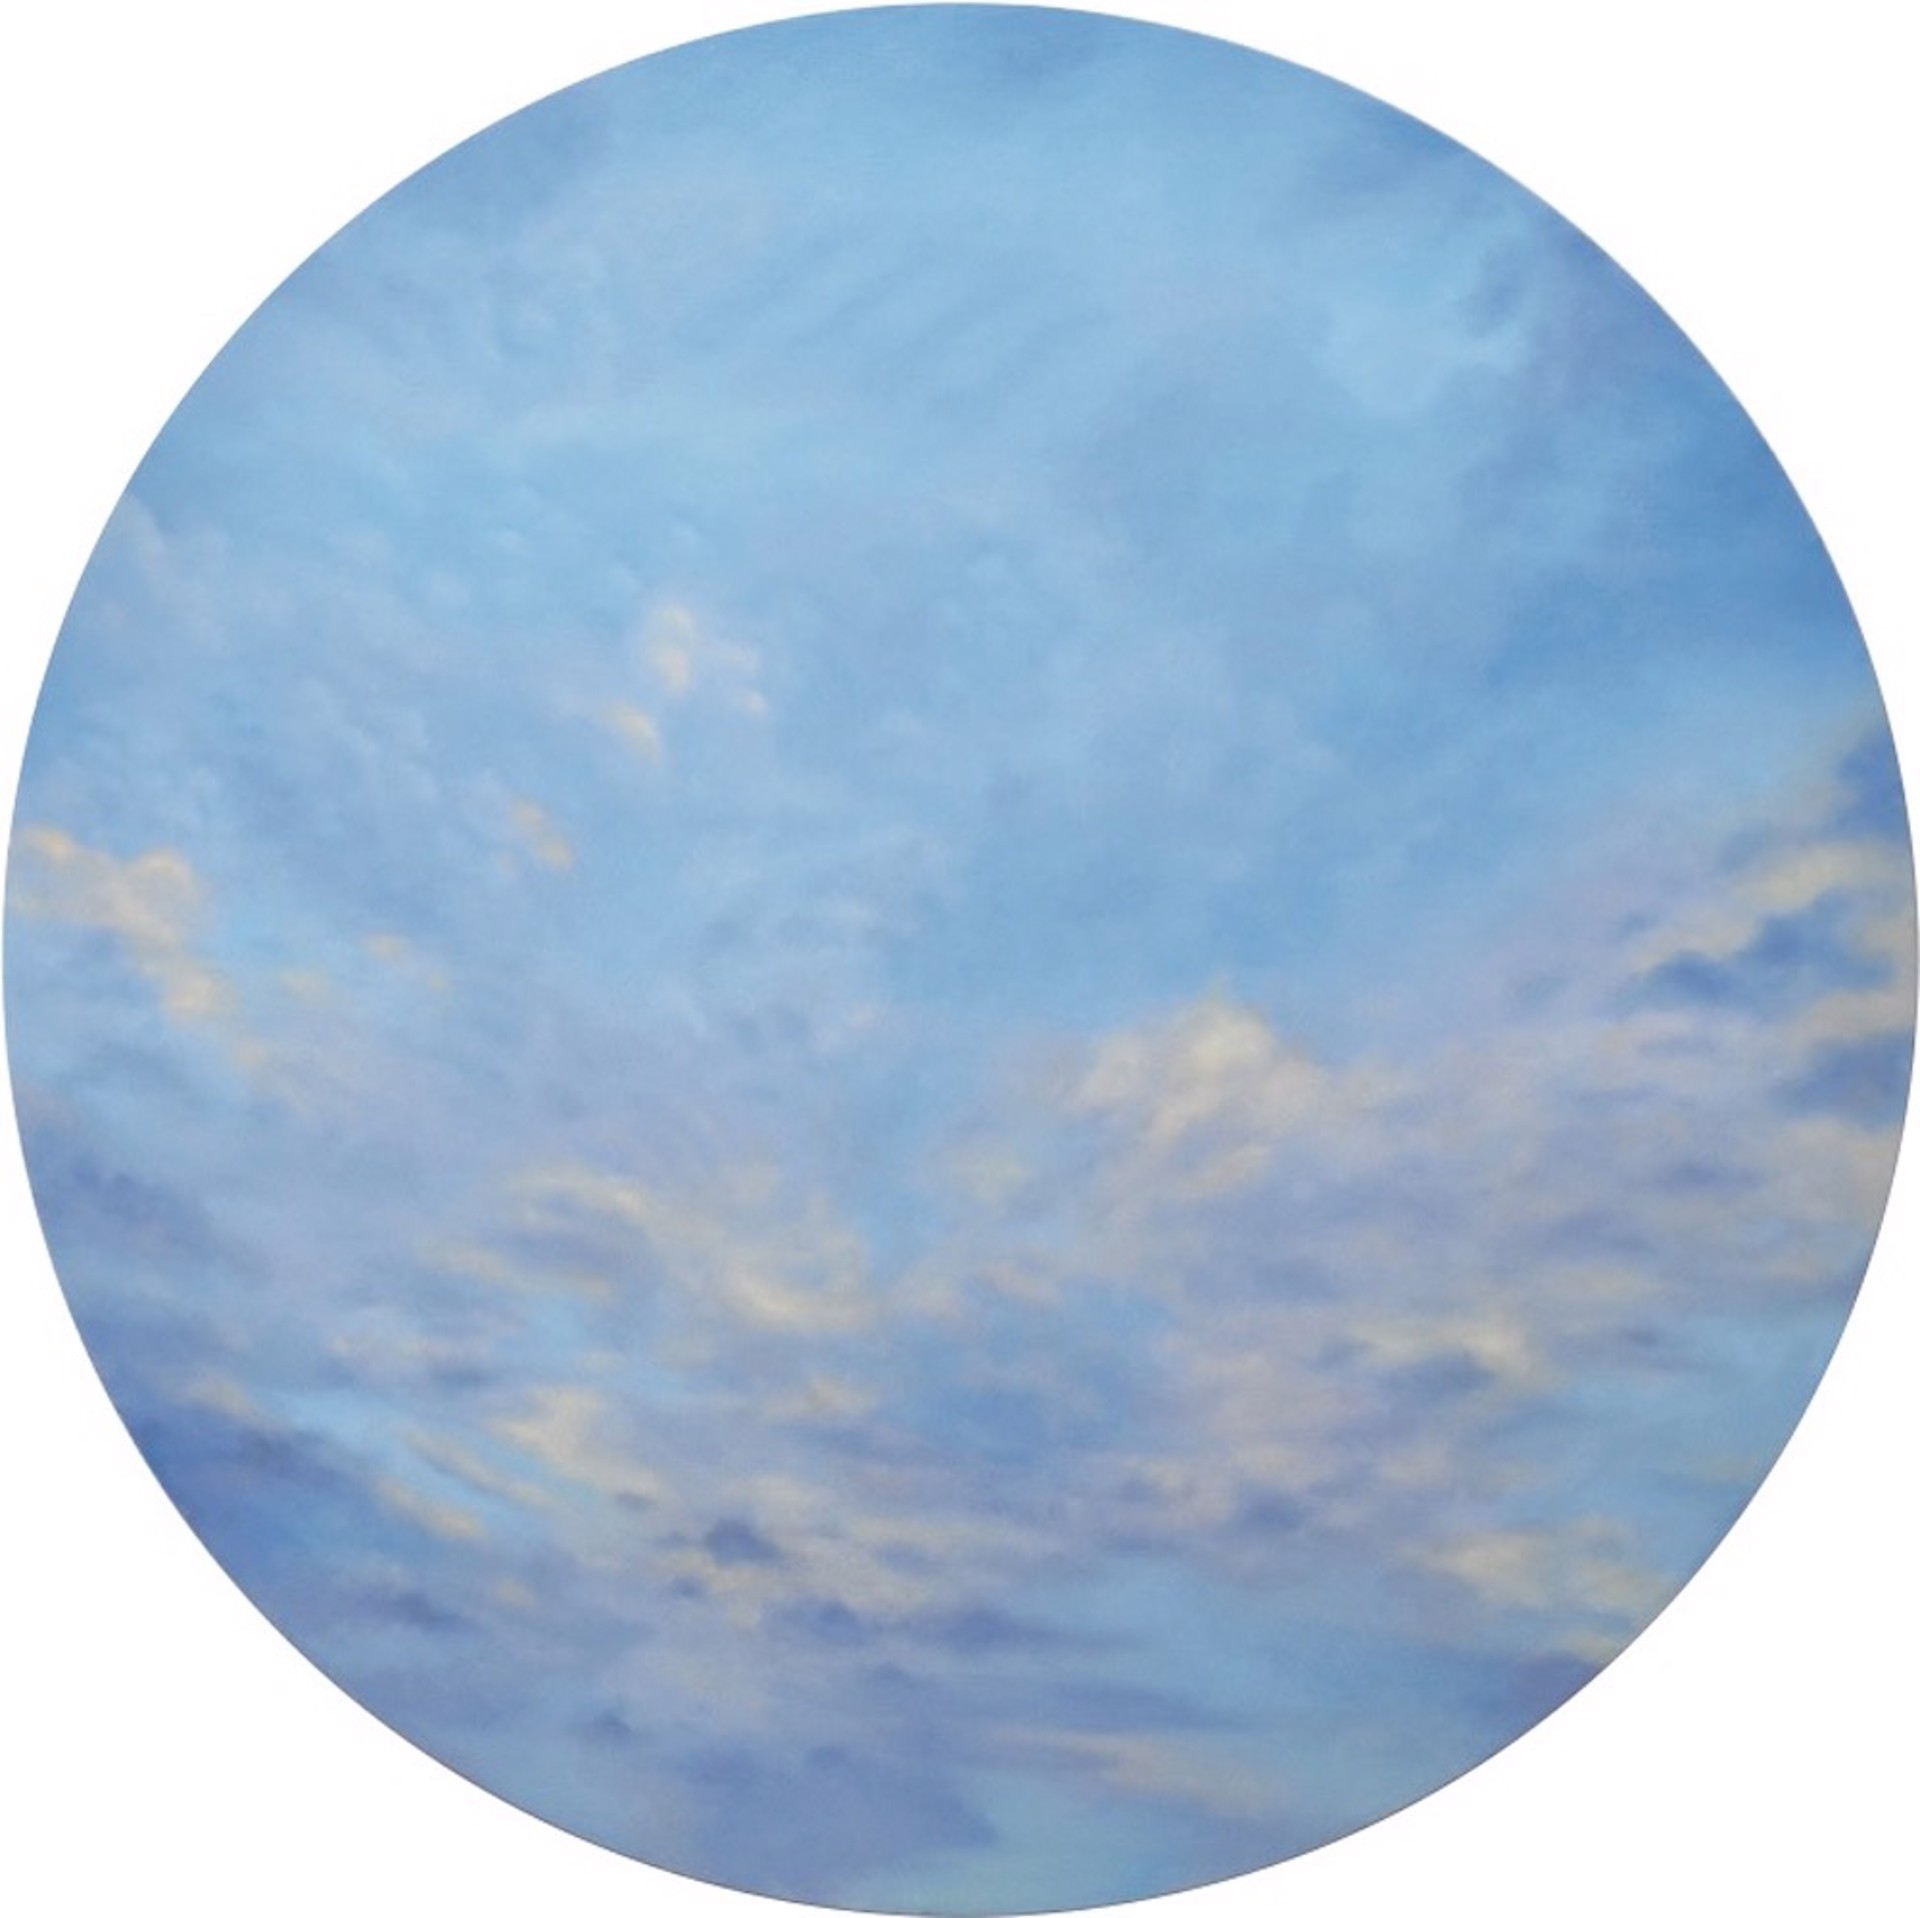 Turbulent Sky by Willard Dixon